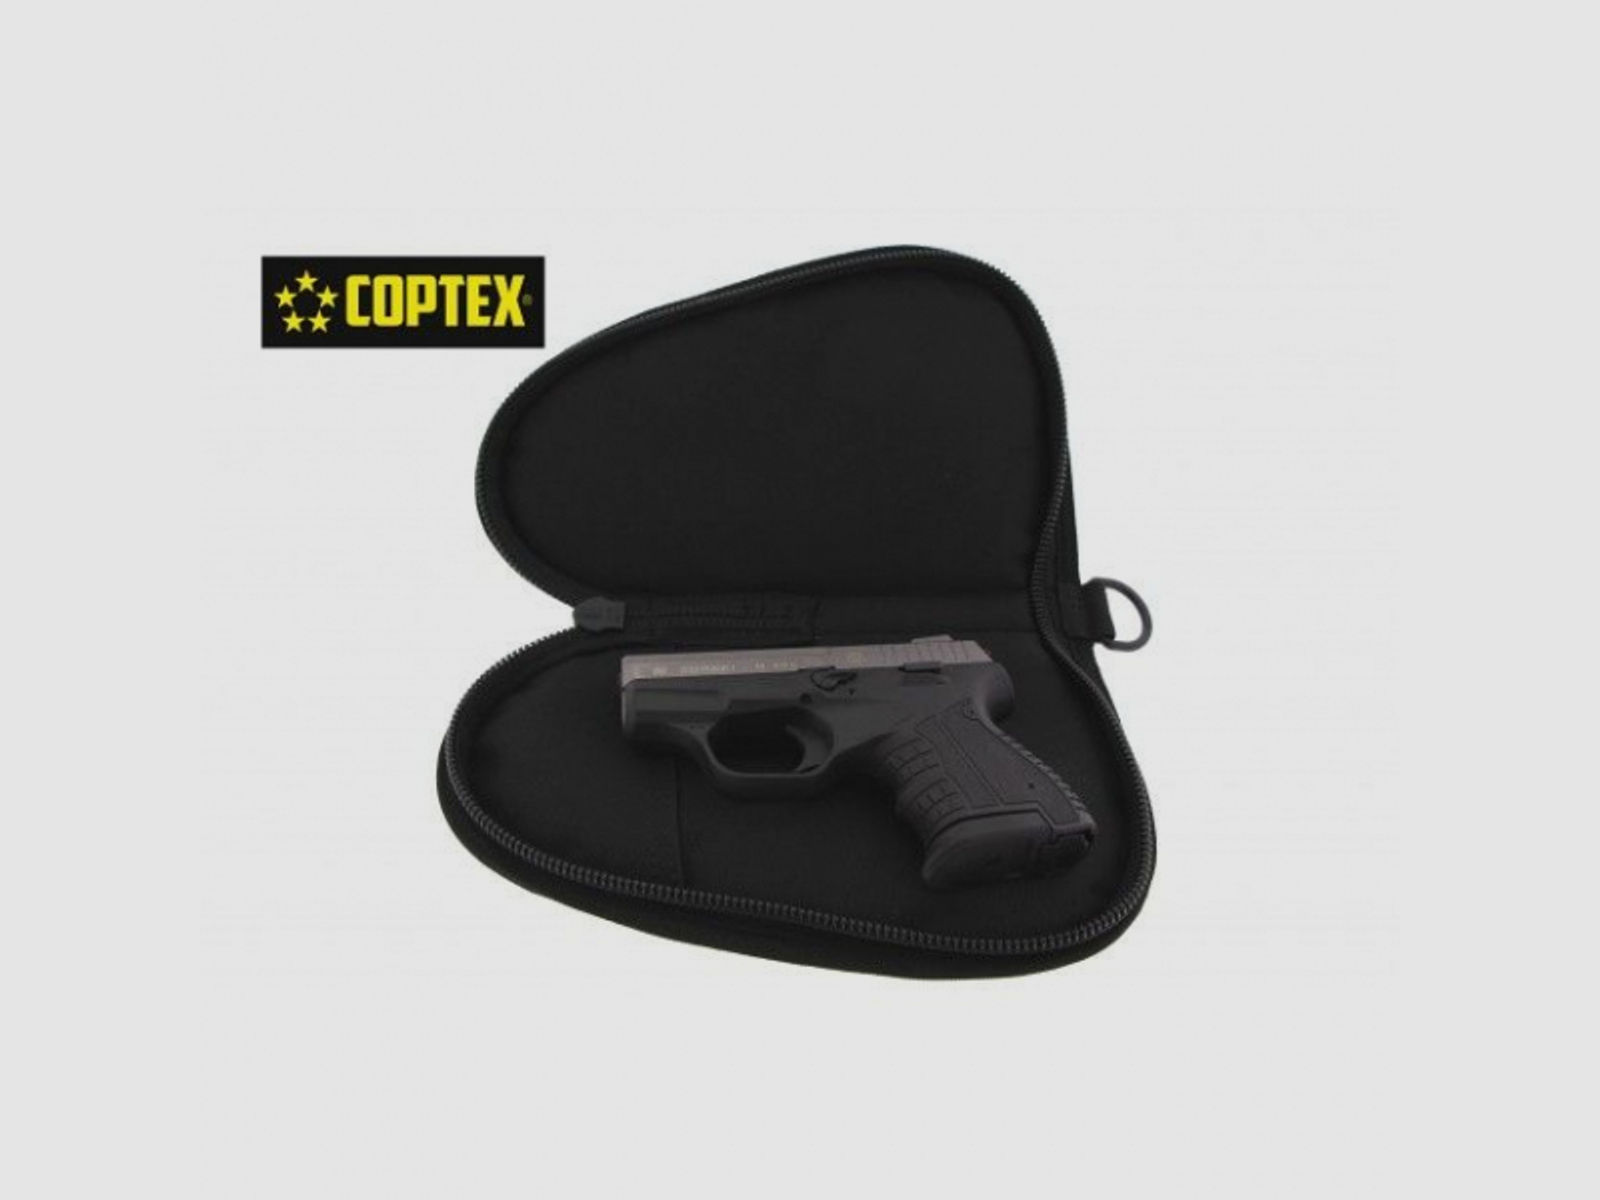 COPTEX Pistolentasche klein